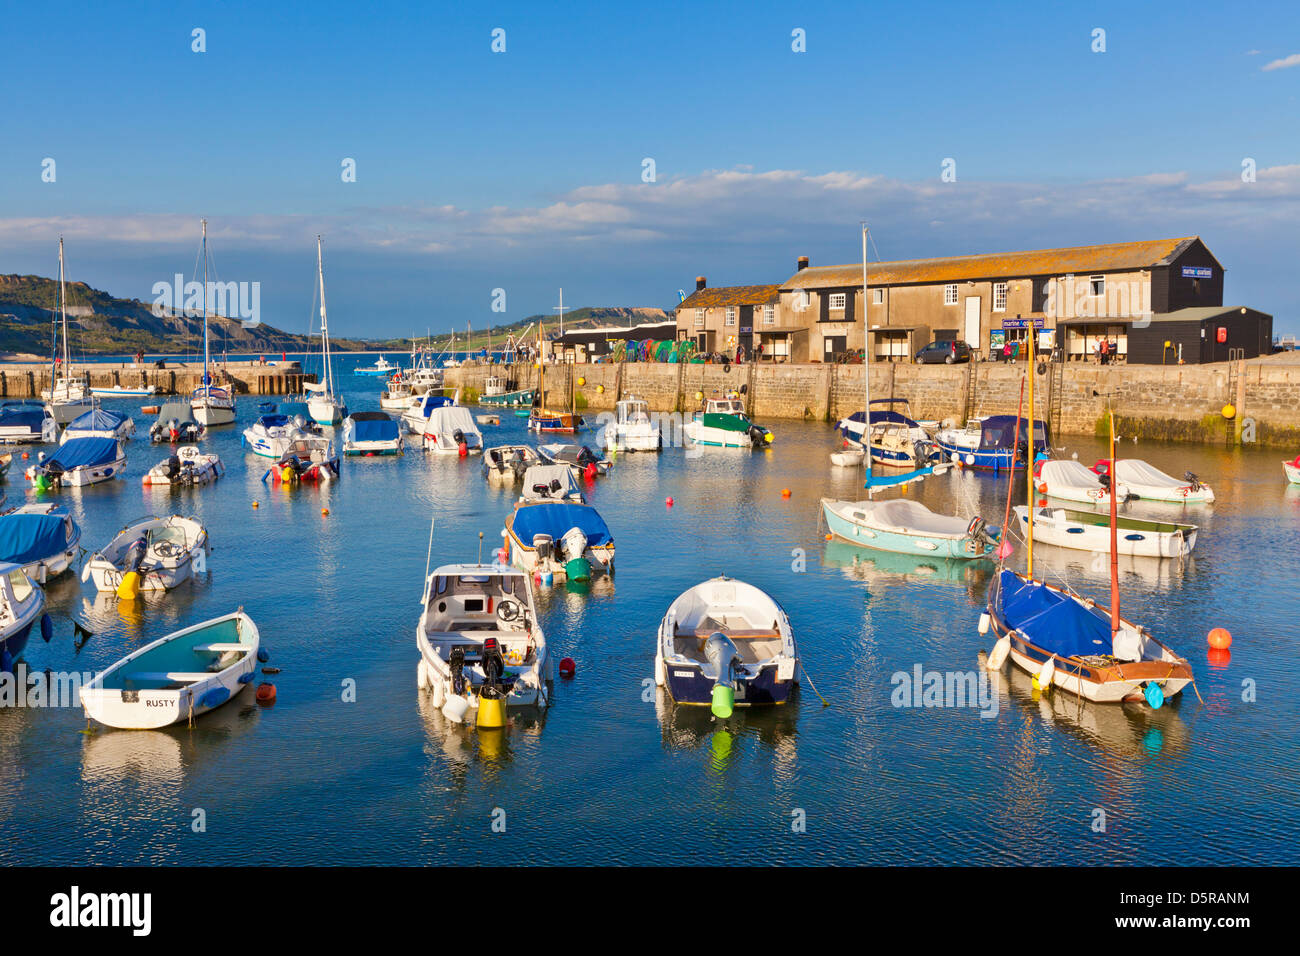 Bateaux de pêche dans le port de Lyme Regis Dorset England UK GB EU Europe Banque D'Images